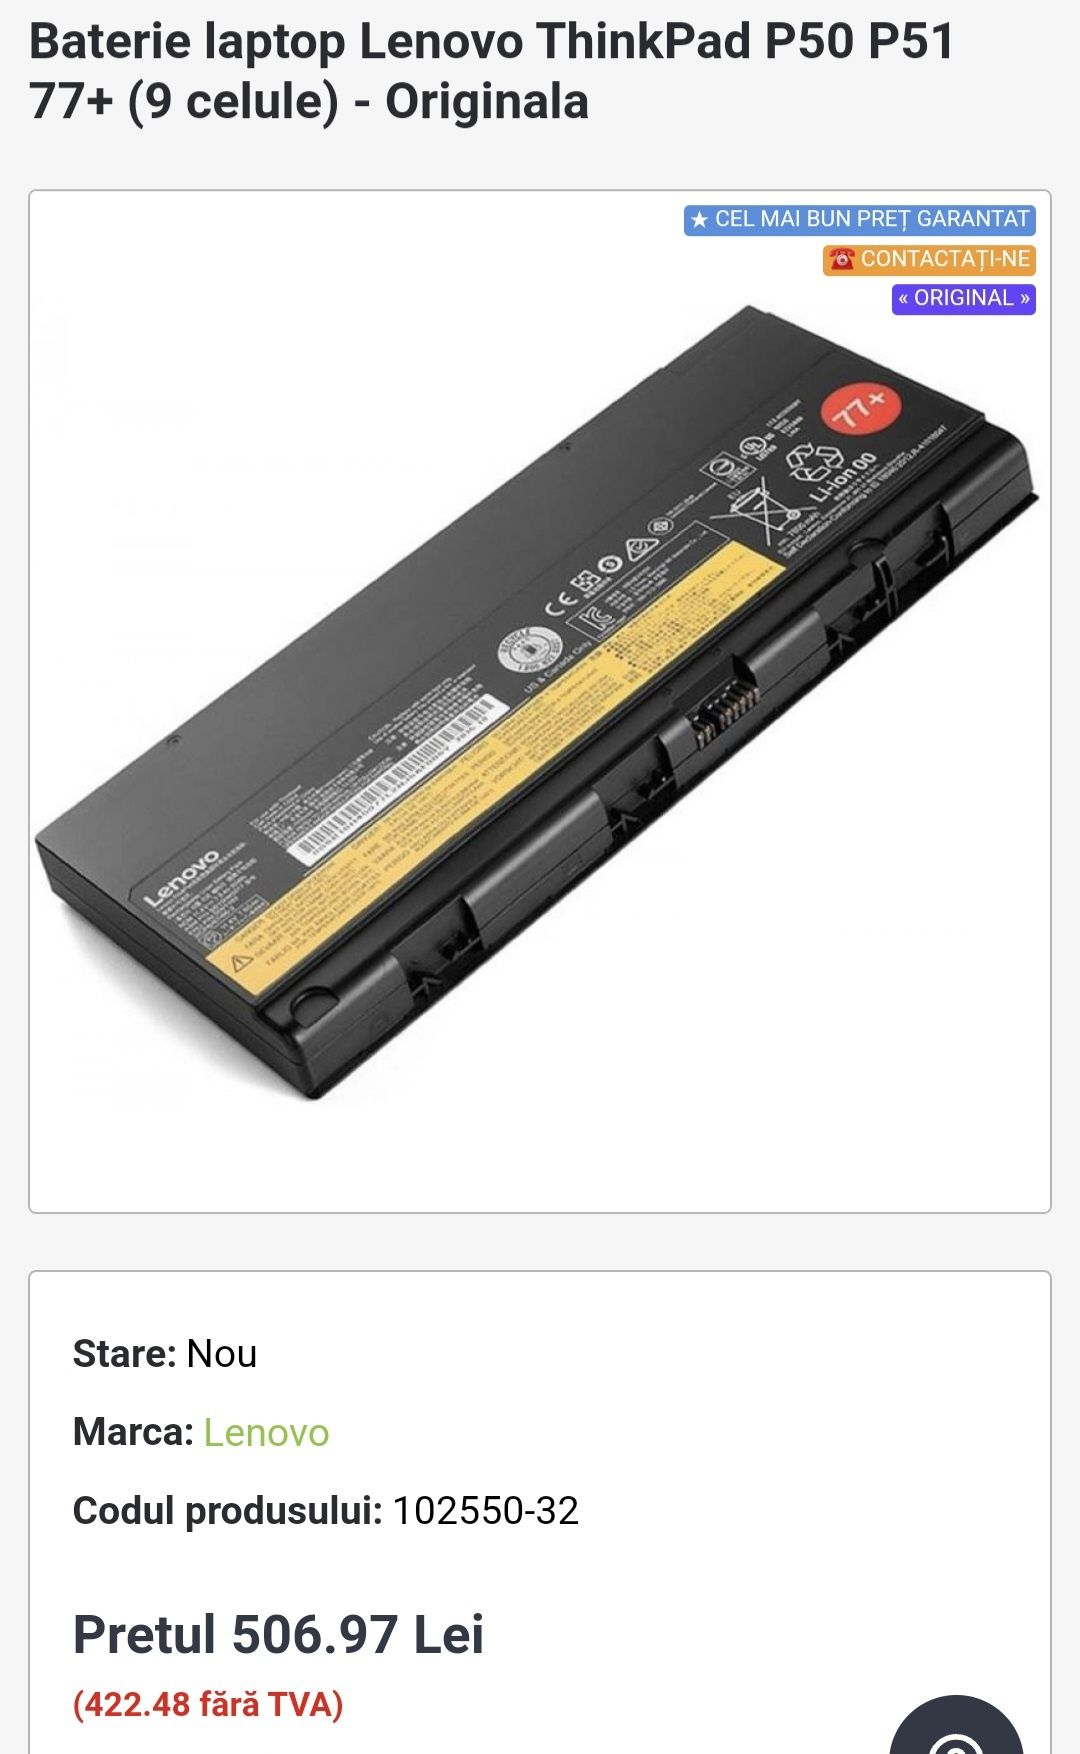 Acumulatori Bateri Lenovo ThinkPad P50, P51, P52